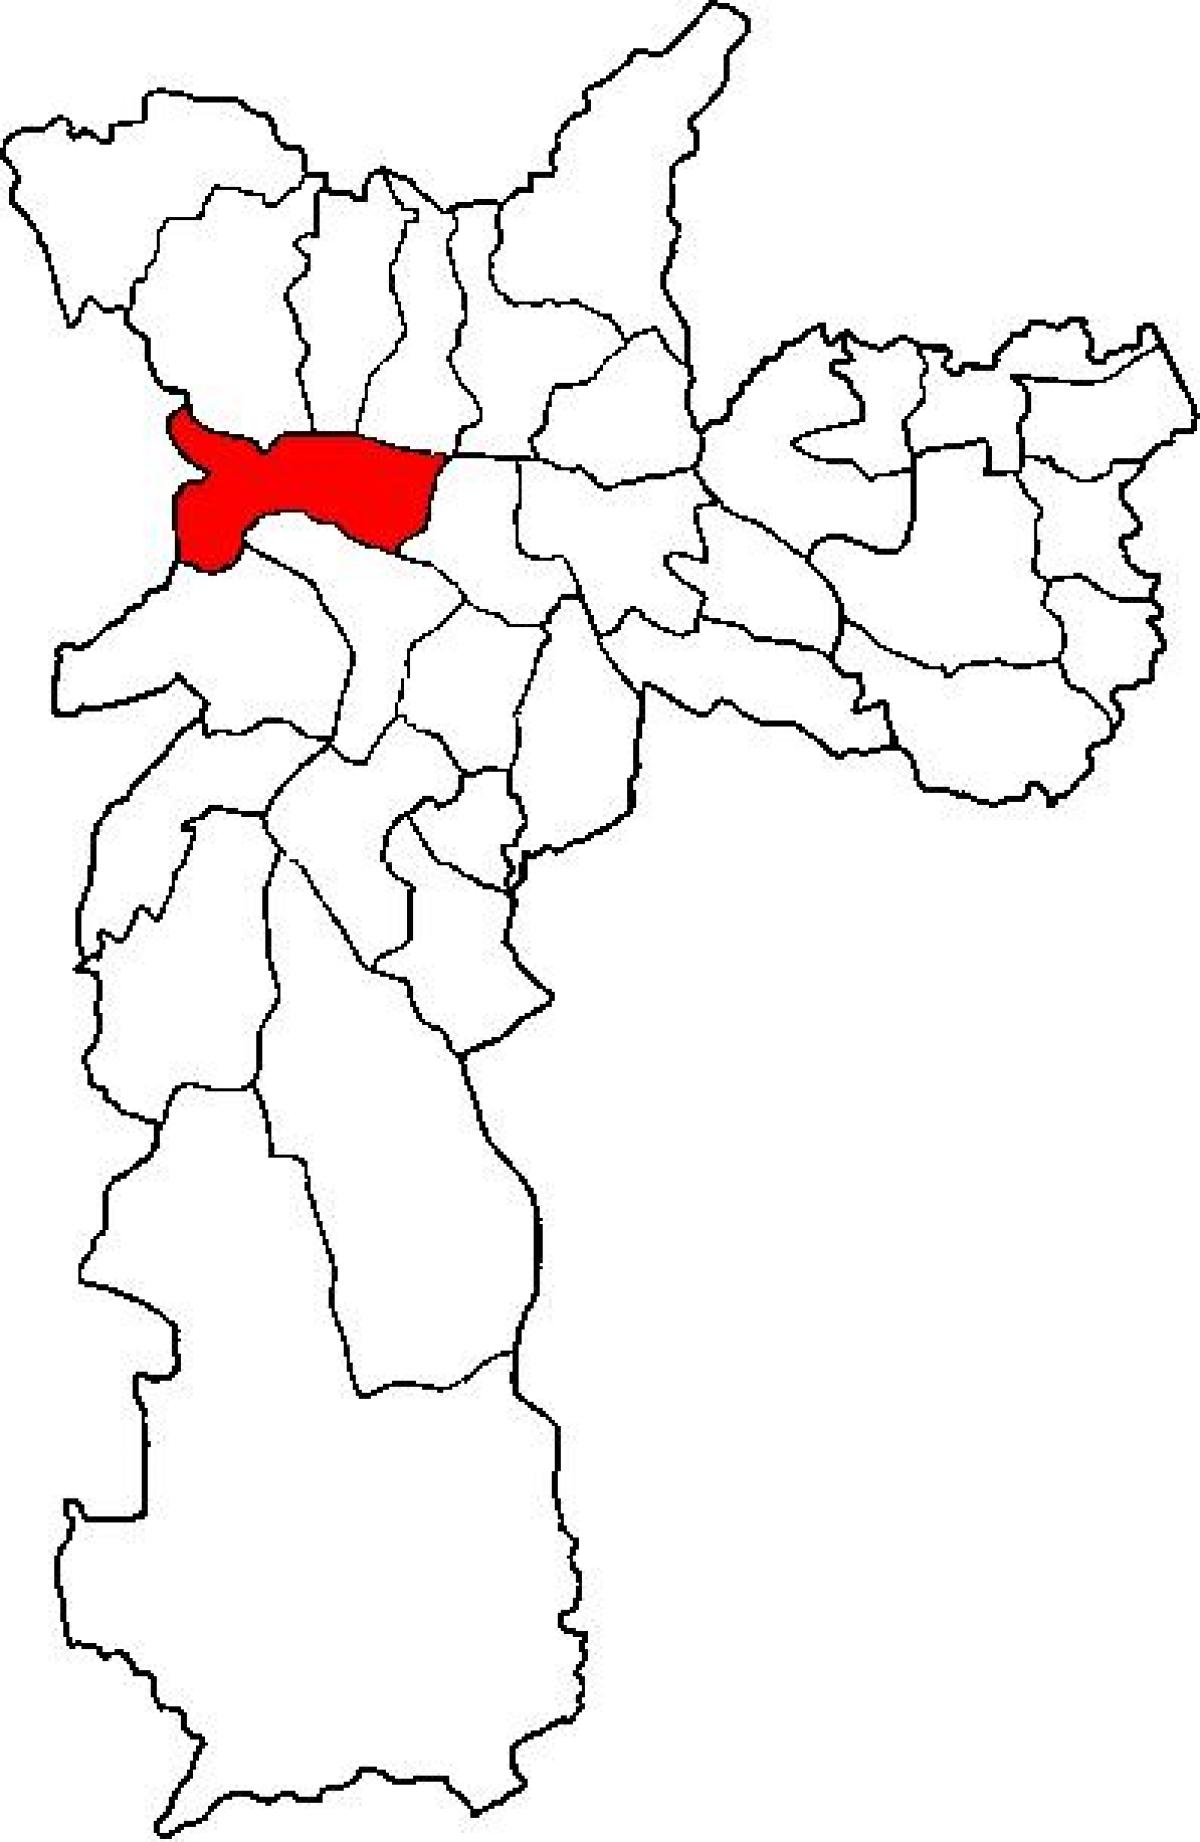 Mapa Lapa azpi-prefektura São Paulo